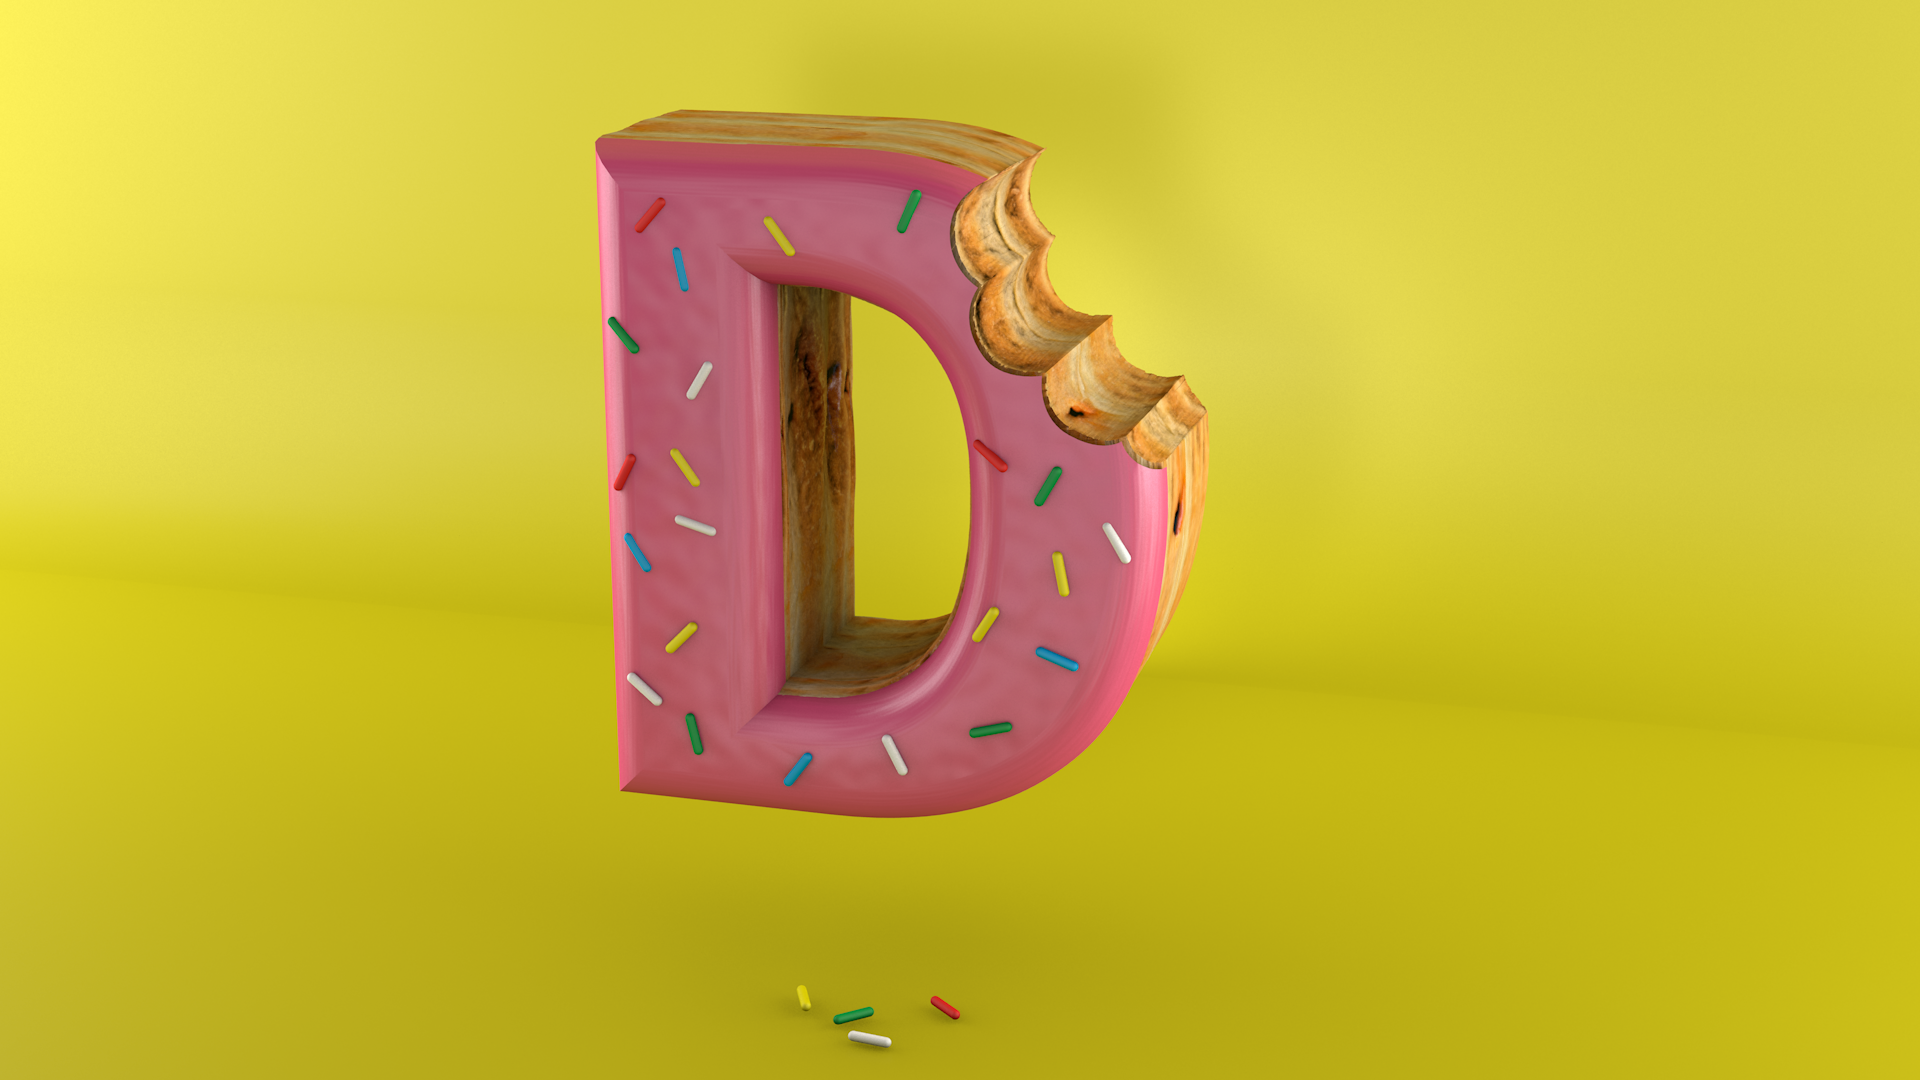  Donut 